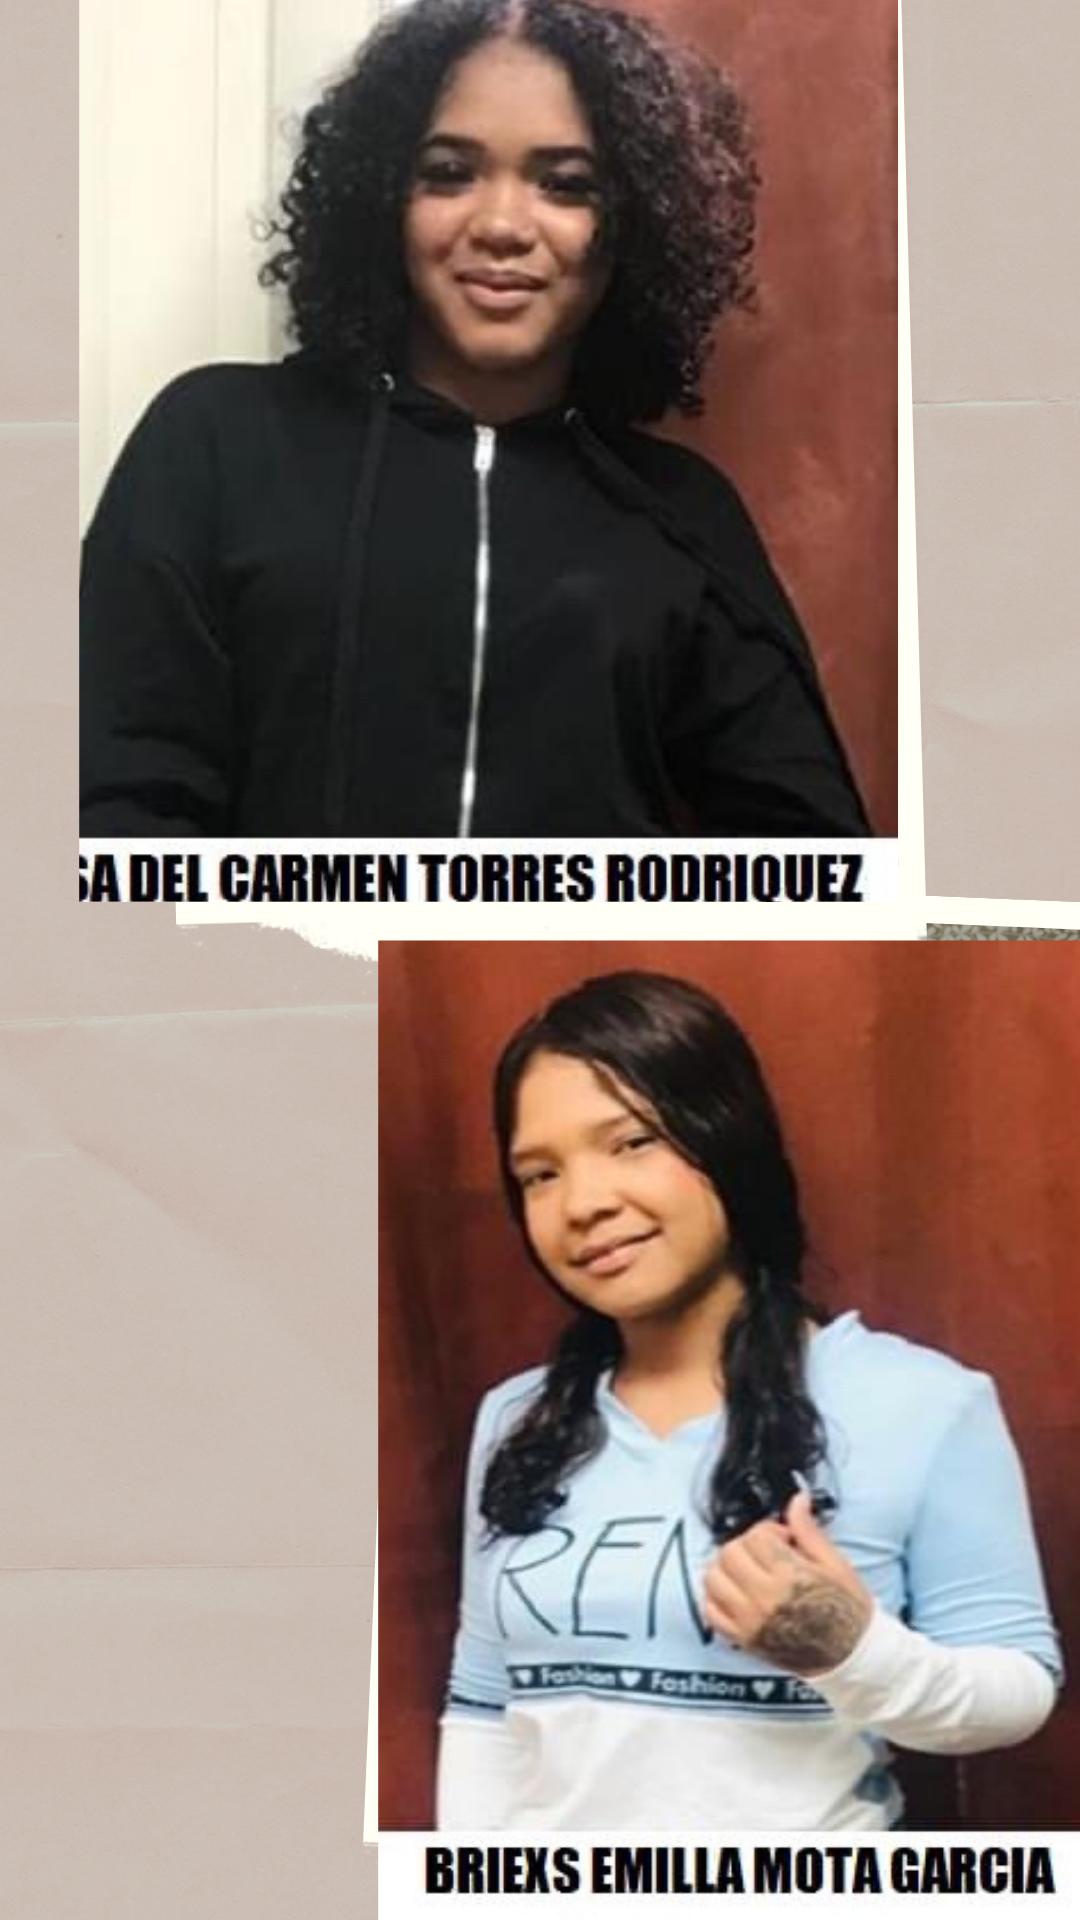 Two Venezuelan teens reported missing